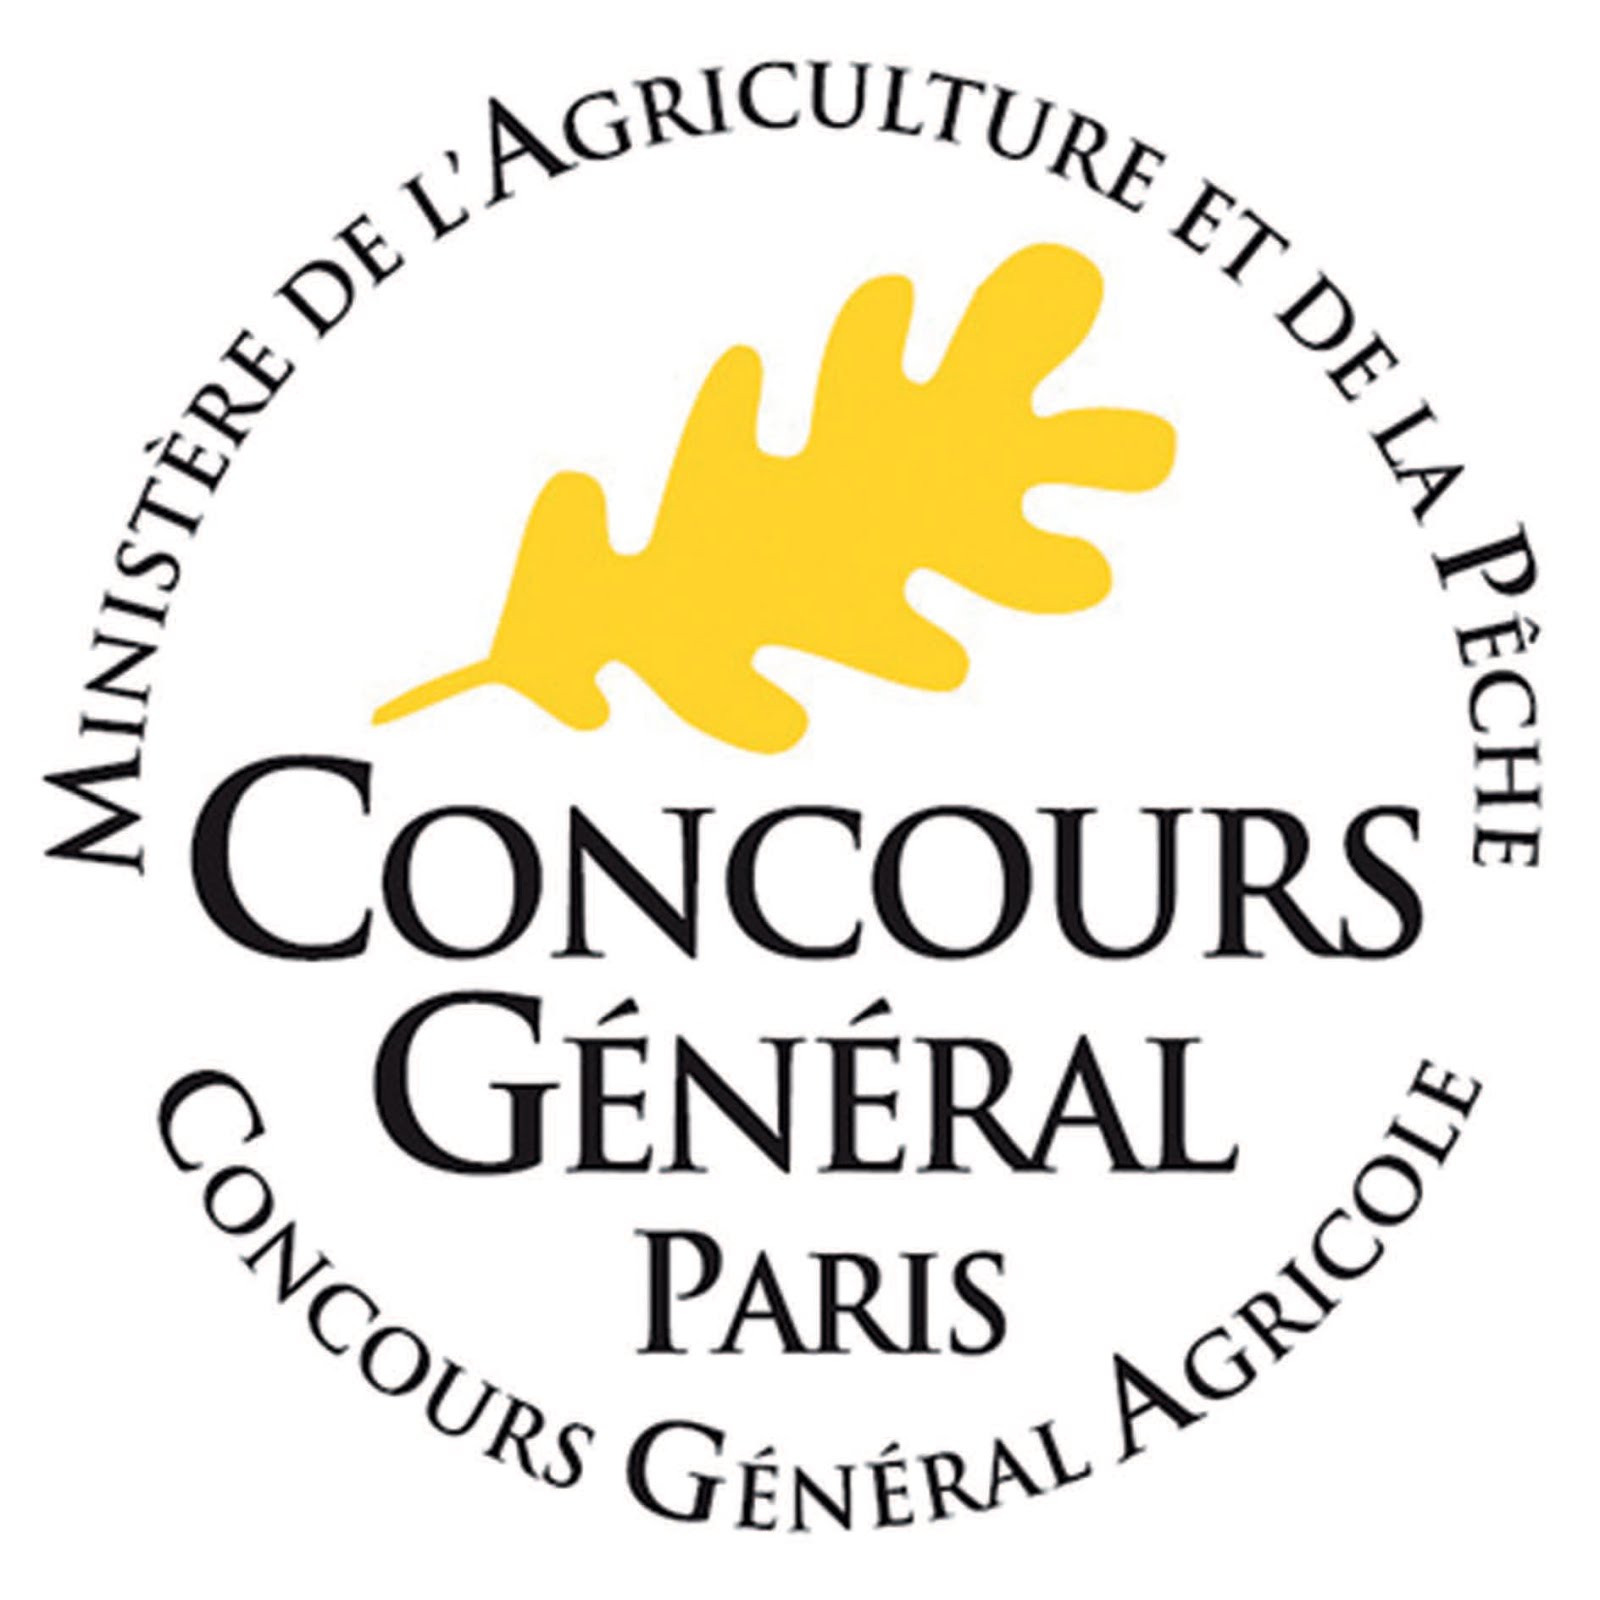 Concours Général Paris